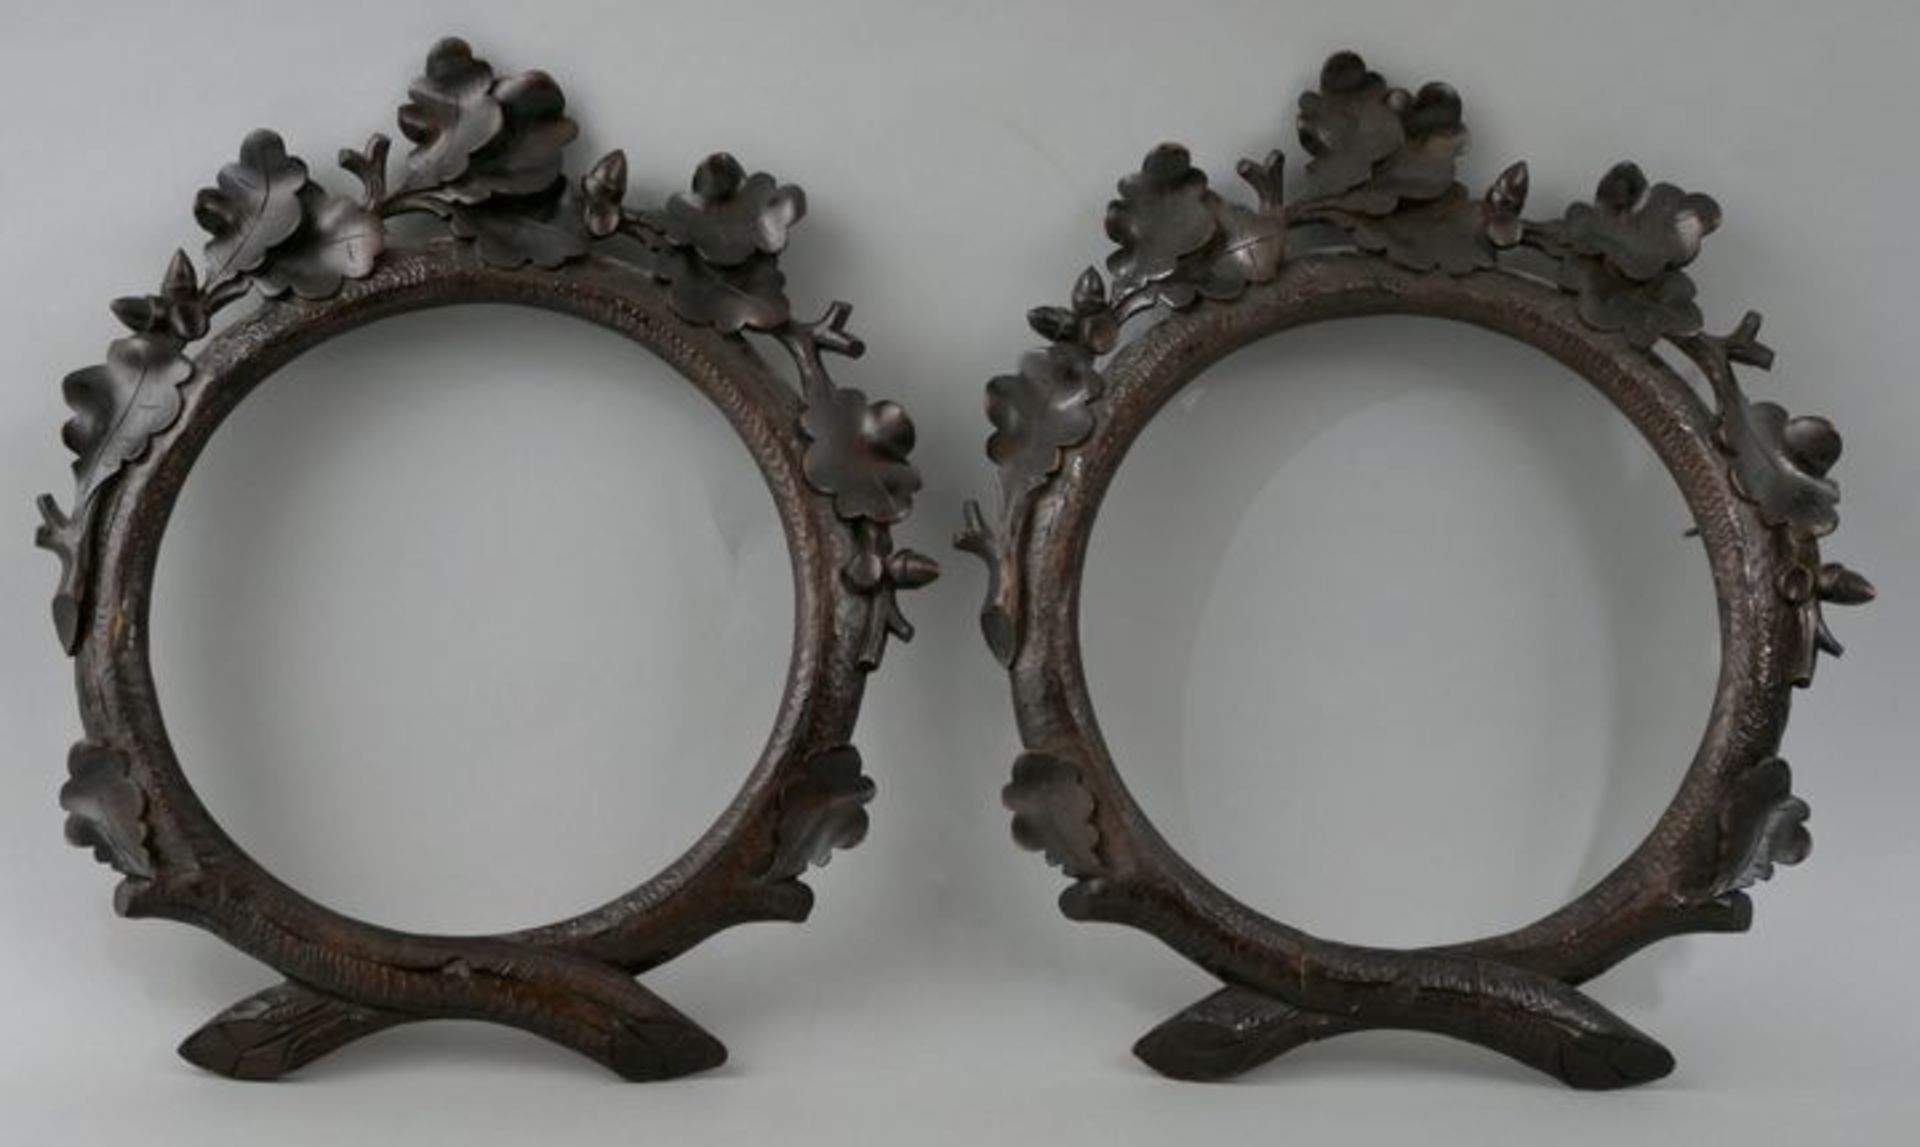 Paar runde Rahmen mit jagdlichem Motiv, 2. H. 19. Jh.Laubholz, geschnitzt, dunkel gebeizt. Le